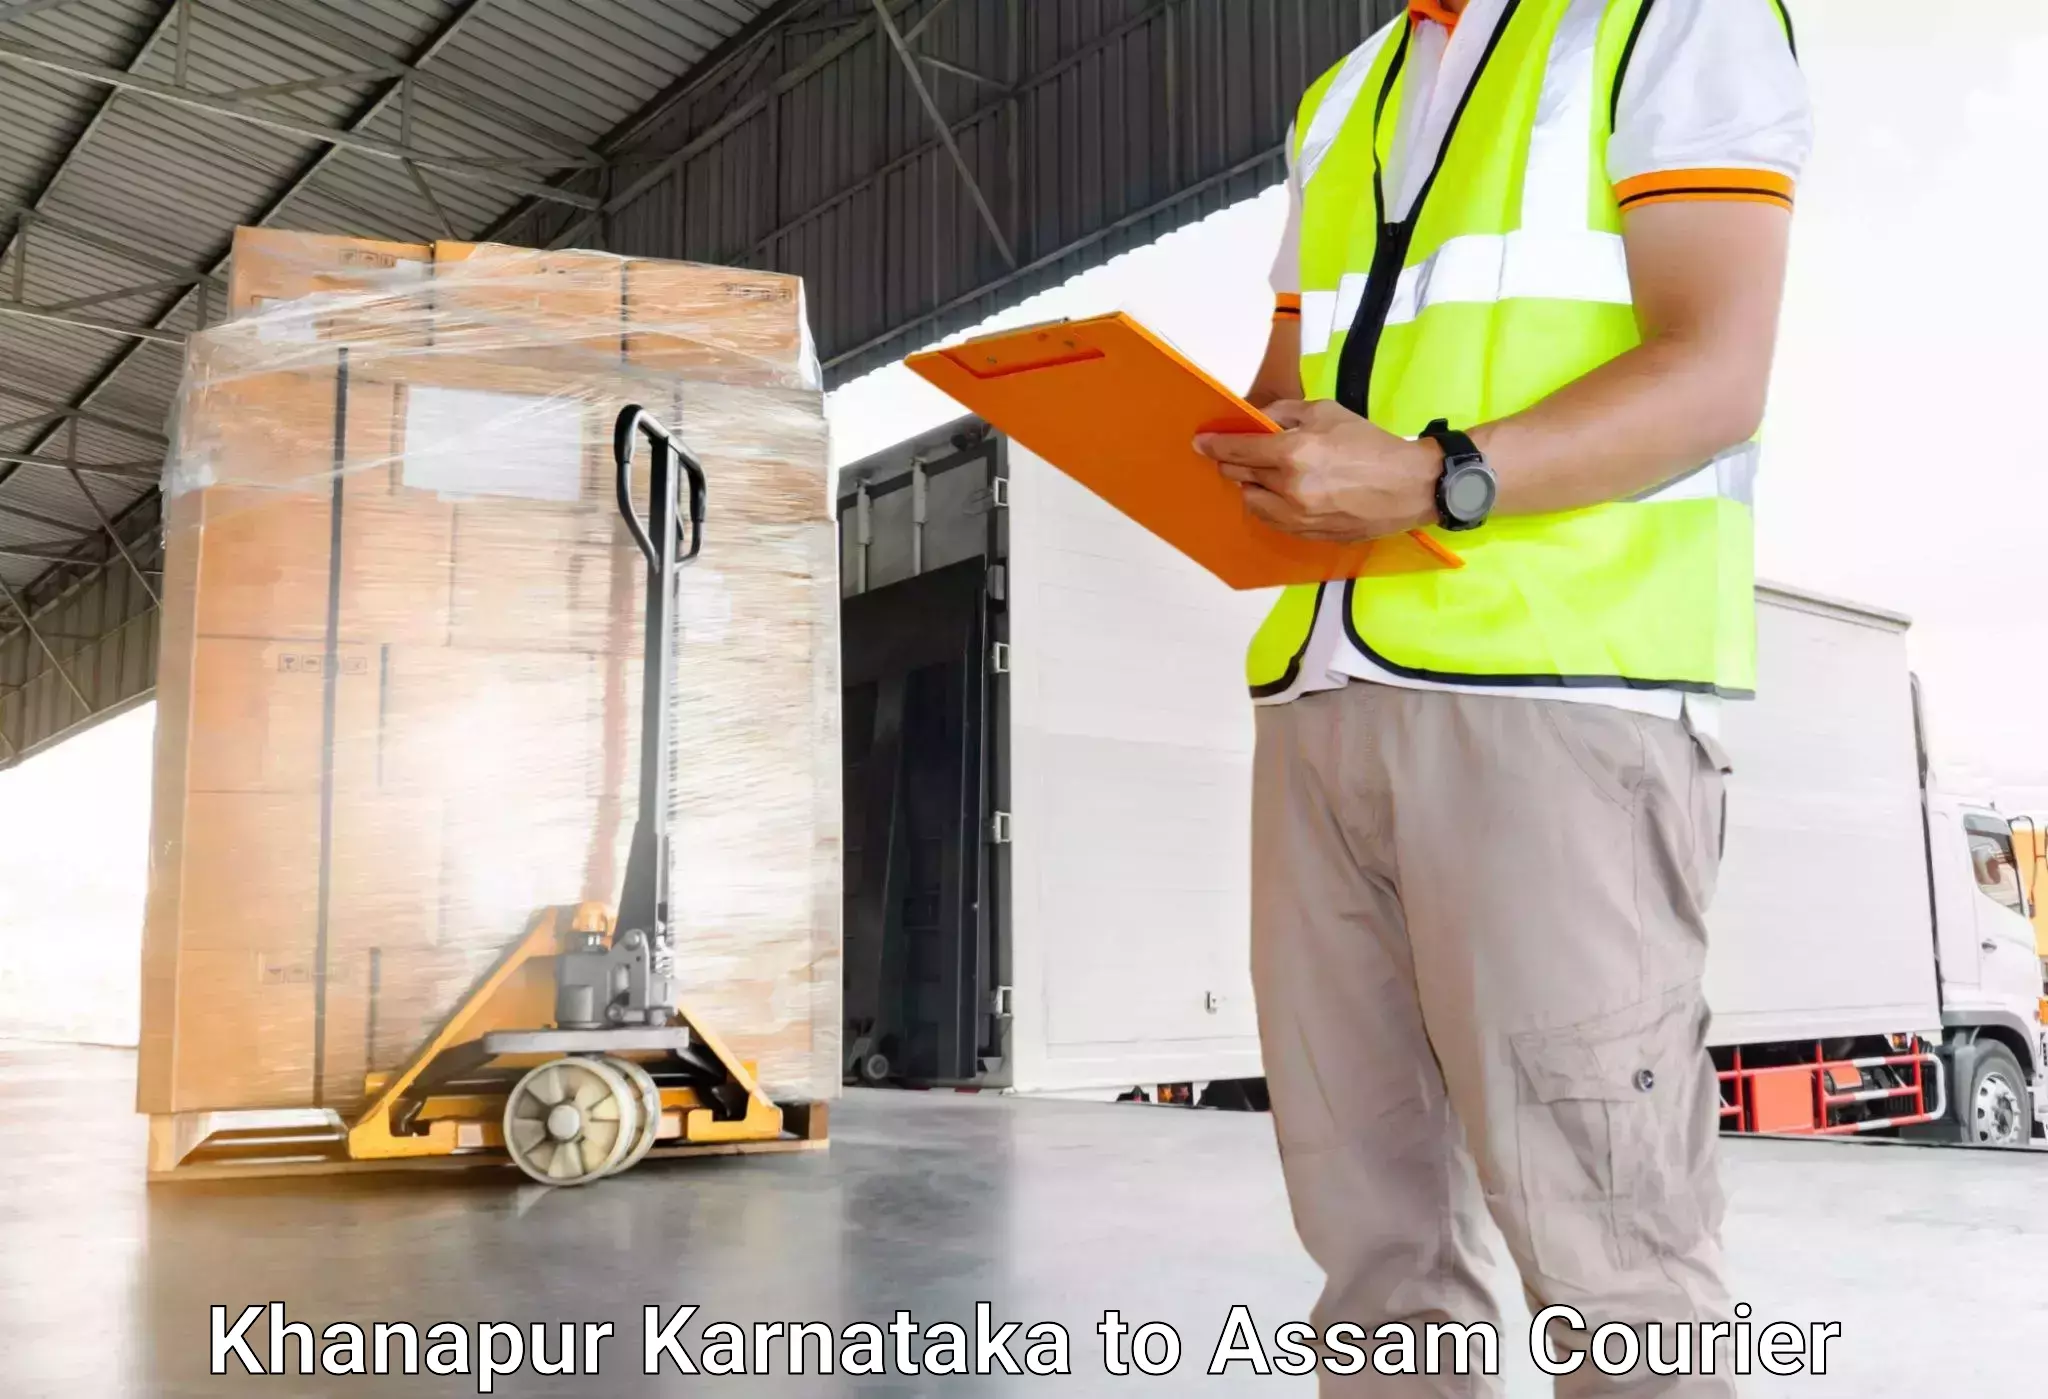 Baggage shipping service Khanapur Karnataka to Nagaon